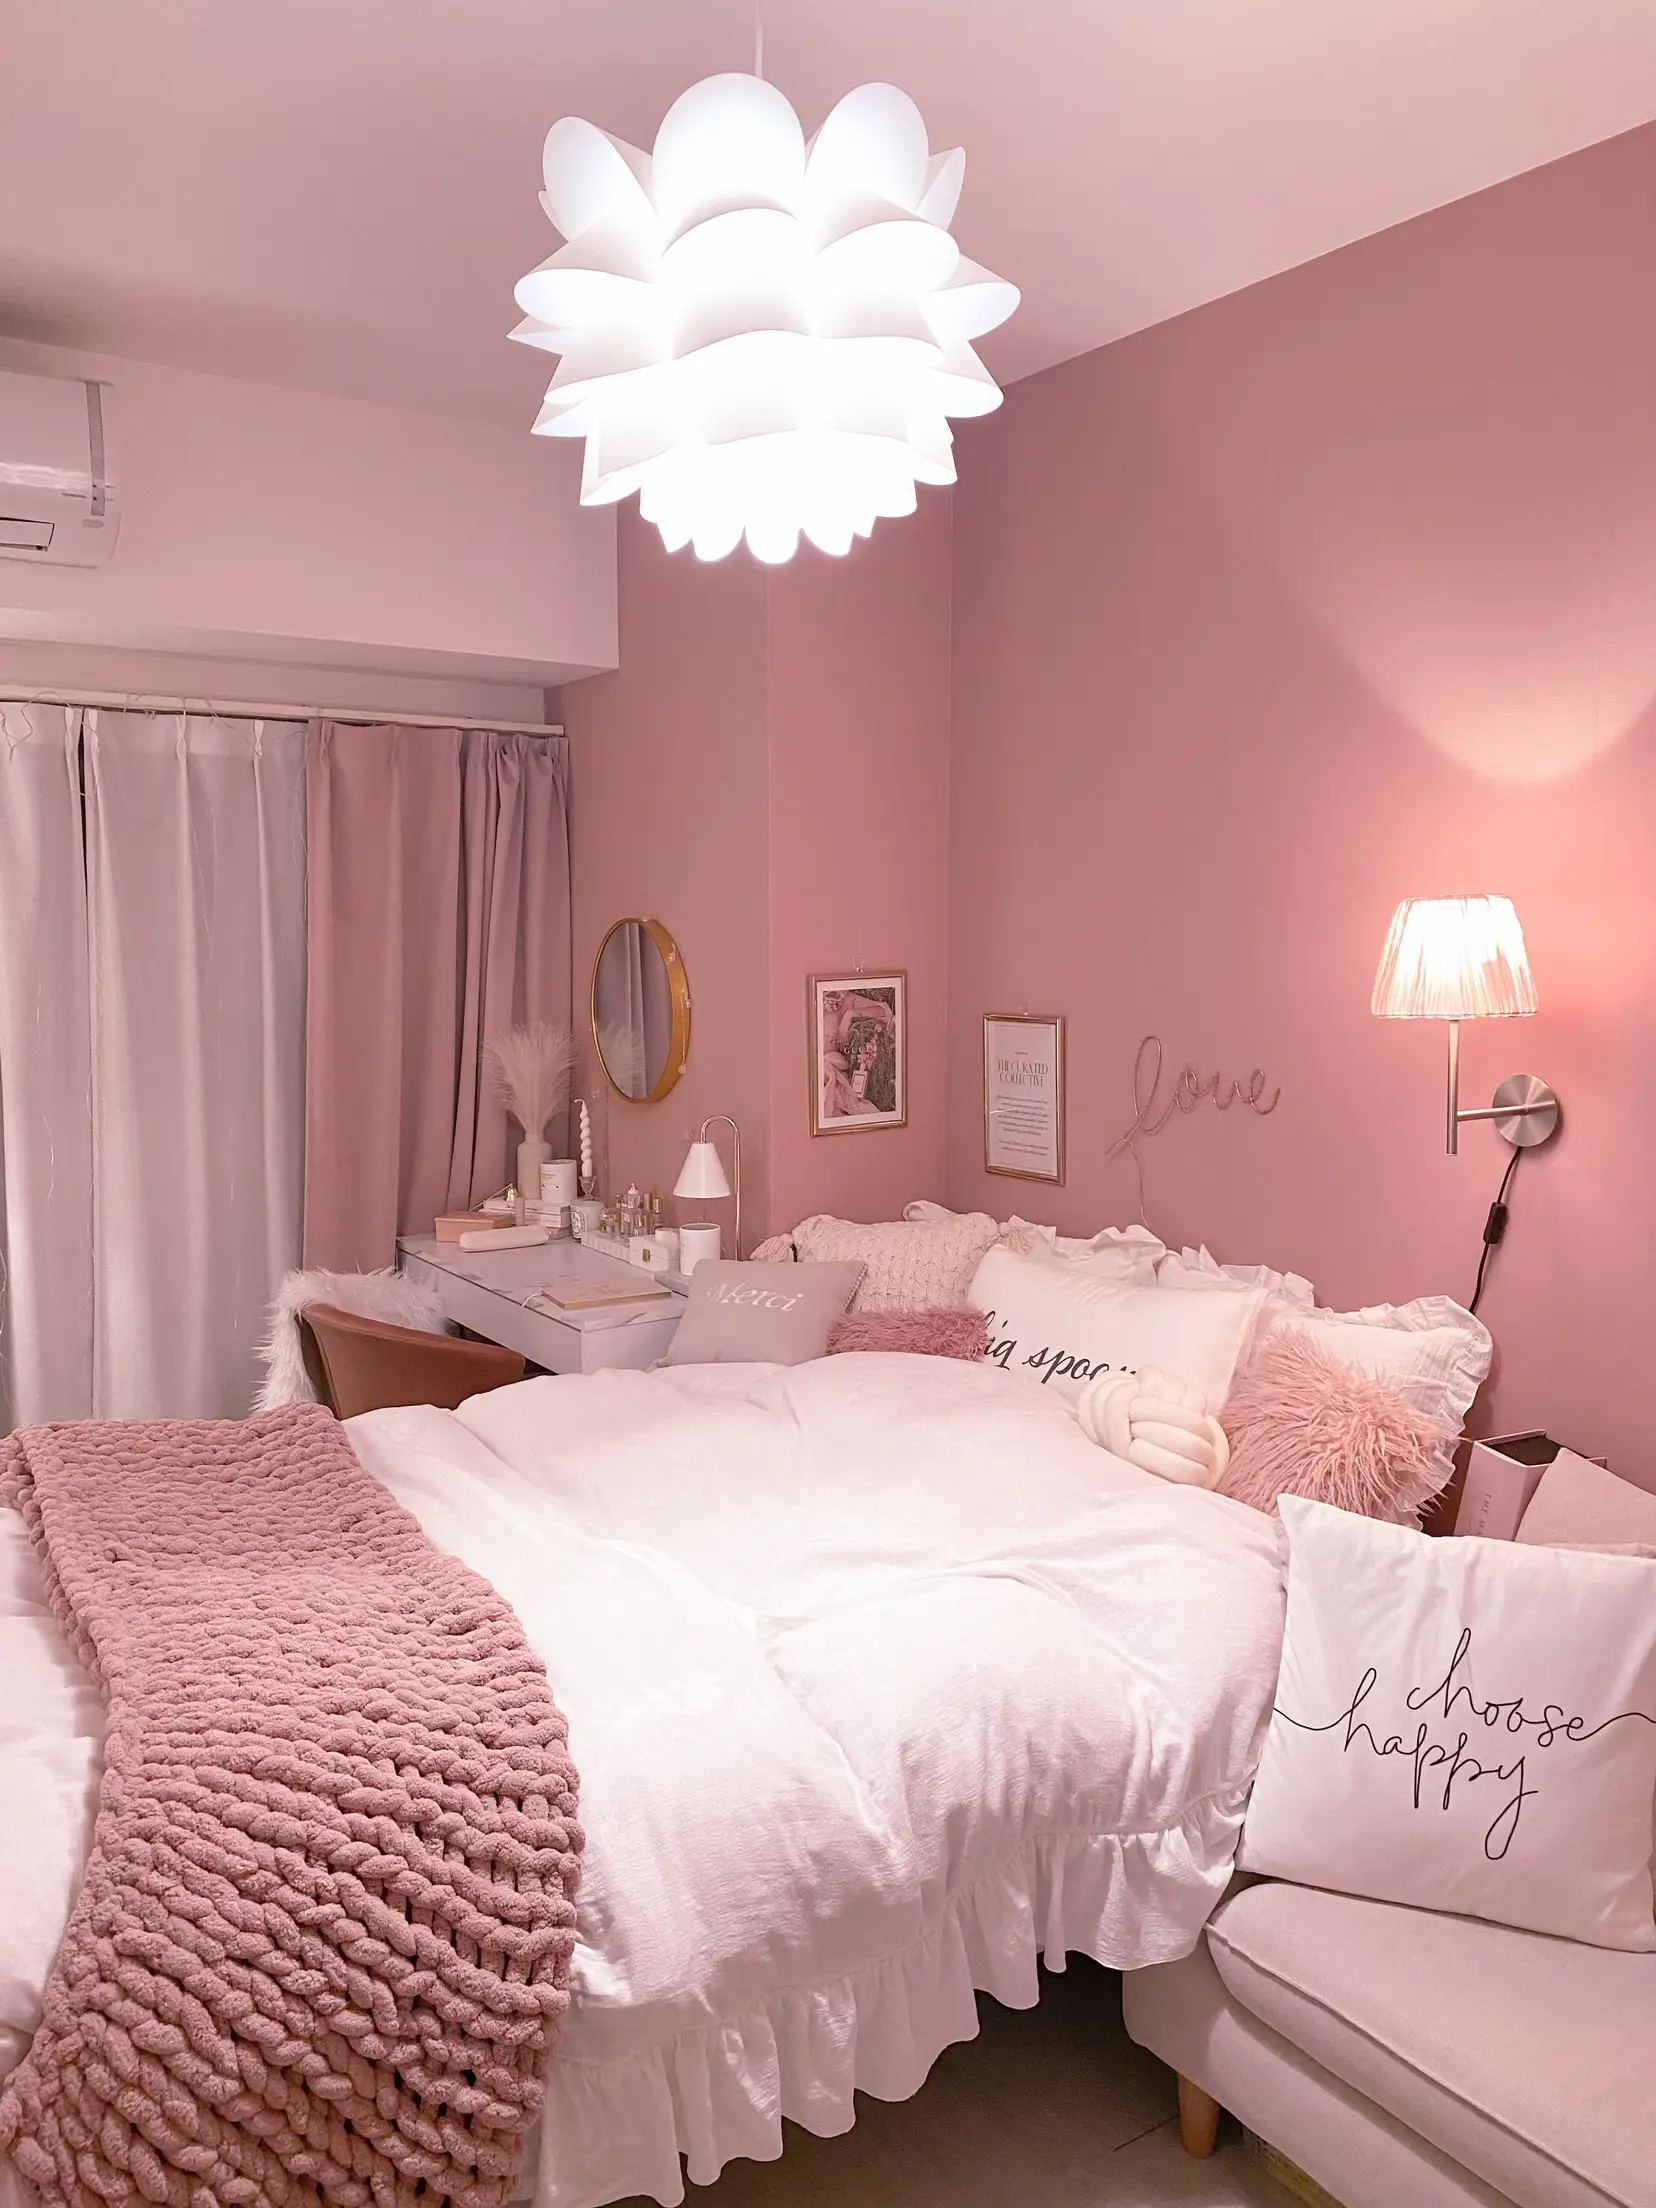 お気に入りに囲まれたベットルーム   | pupi♡くすみピンクのお部屋が ...